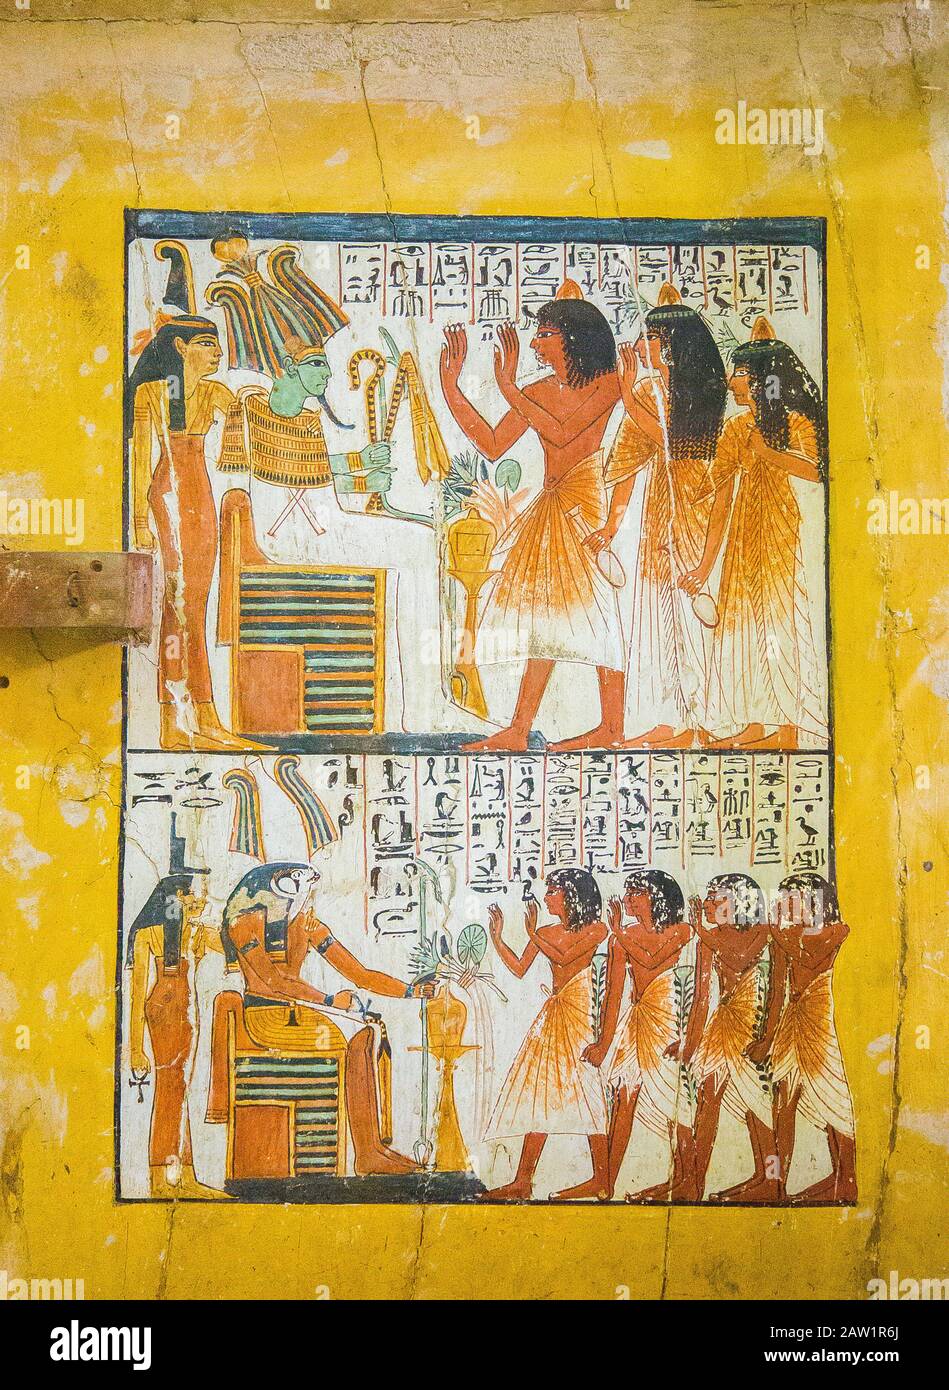 Egitto, Cairo, Museo Egizio, dalla tomba di Sennedjem, Deir el Medina : pannello porta (verso), Sennedjem e la sua famiglia adorano divinità. 2 registri. Foto Stock